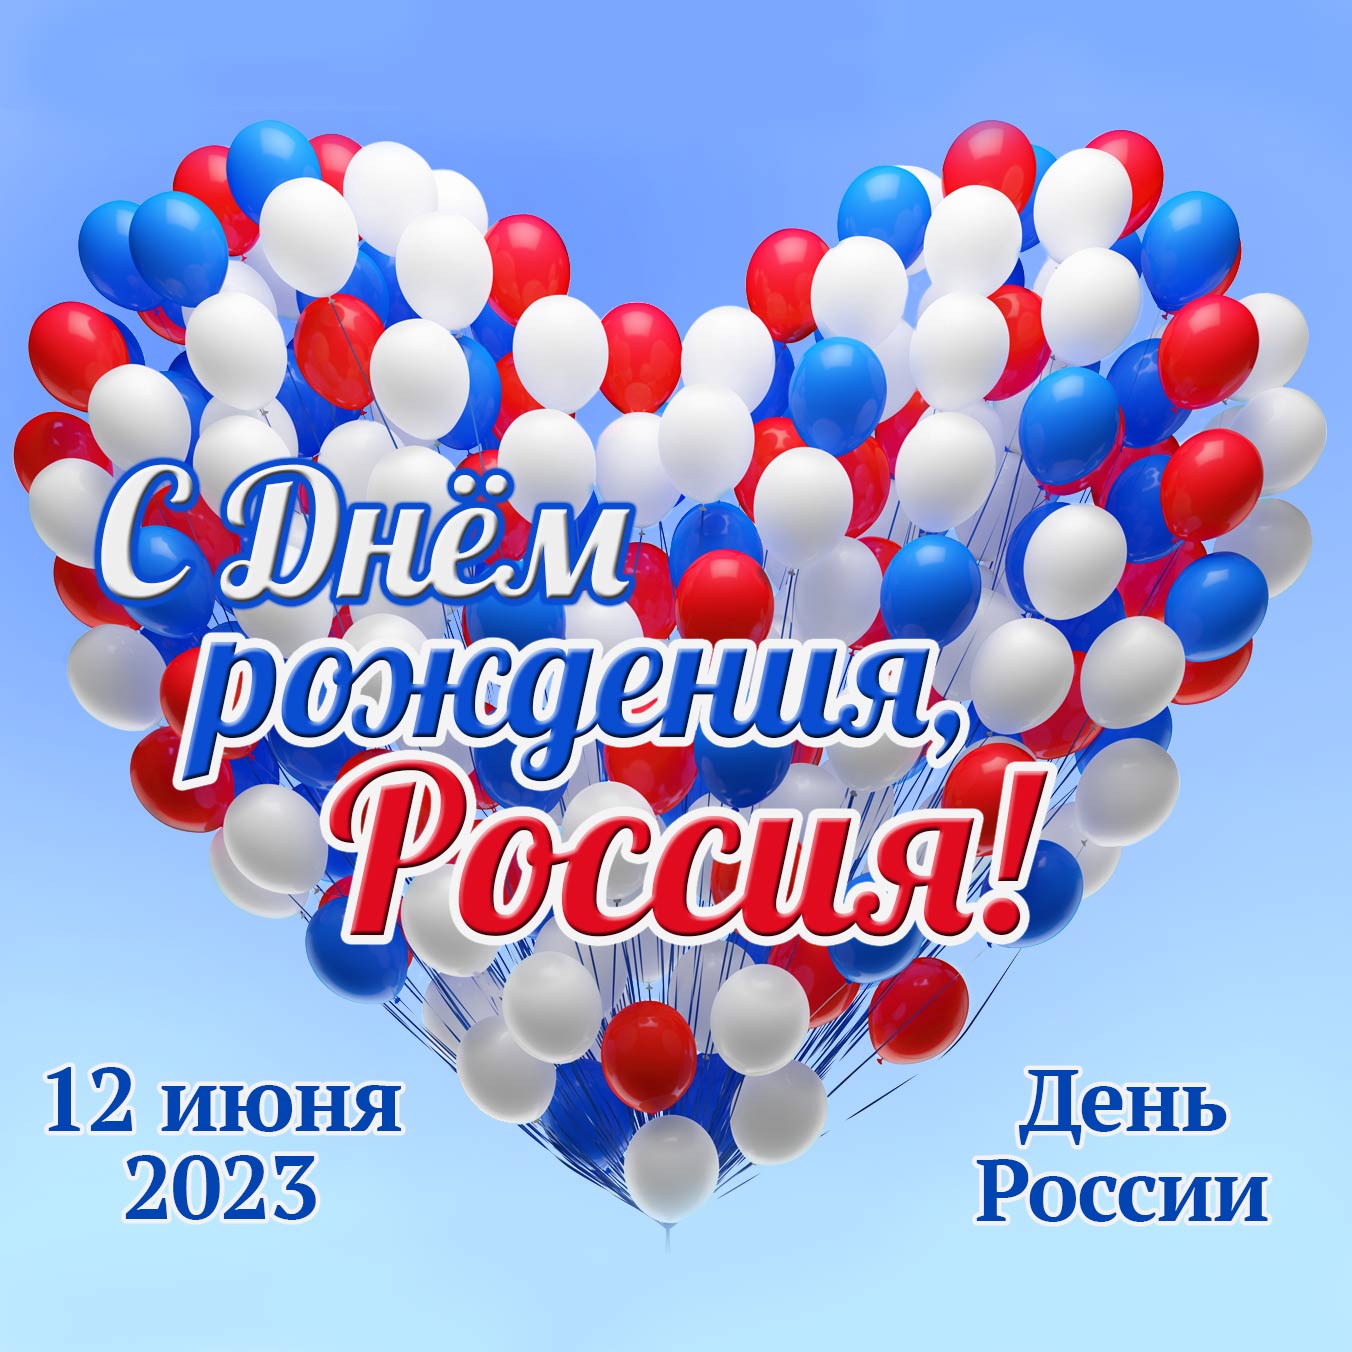 С Днём рождения Россия! 12 июня 2022 - День России.